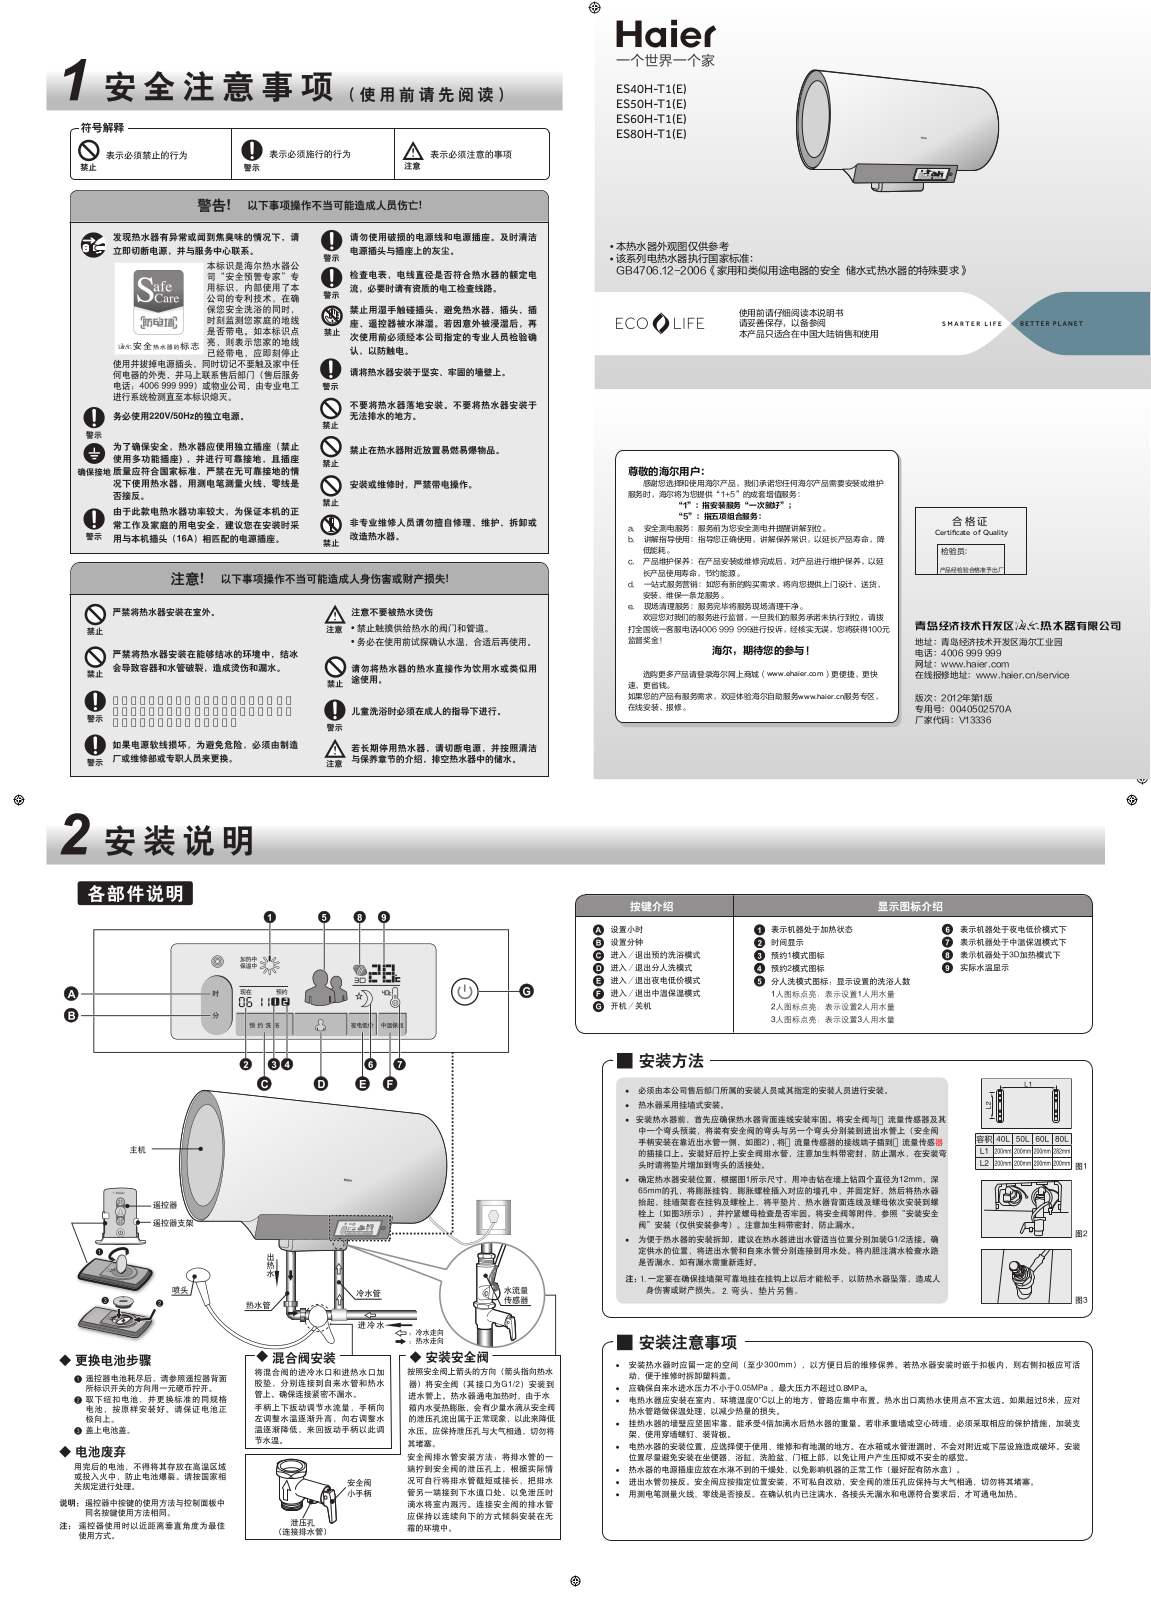 Haier ES50H-T1-E User Manual